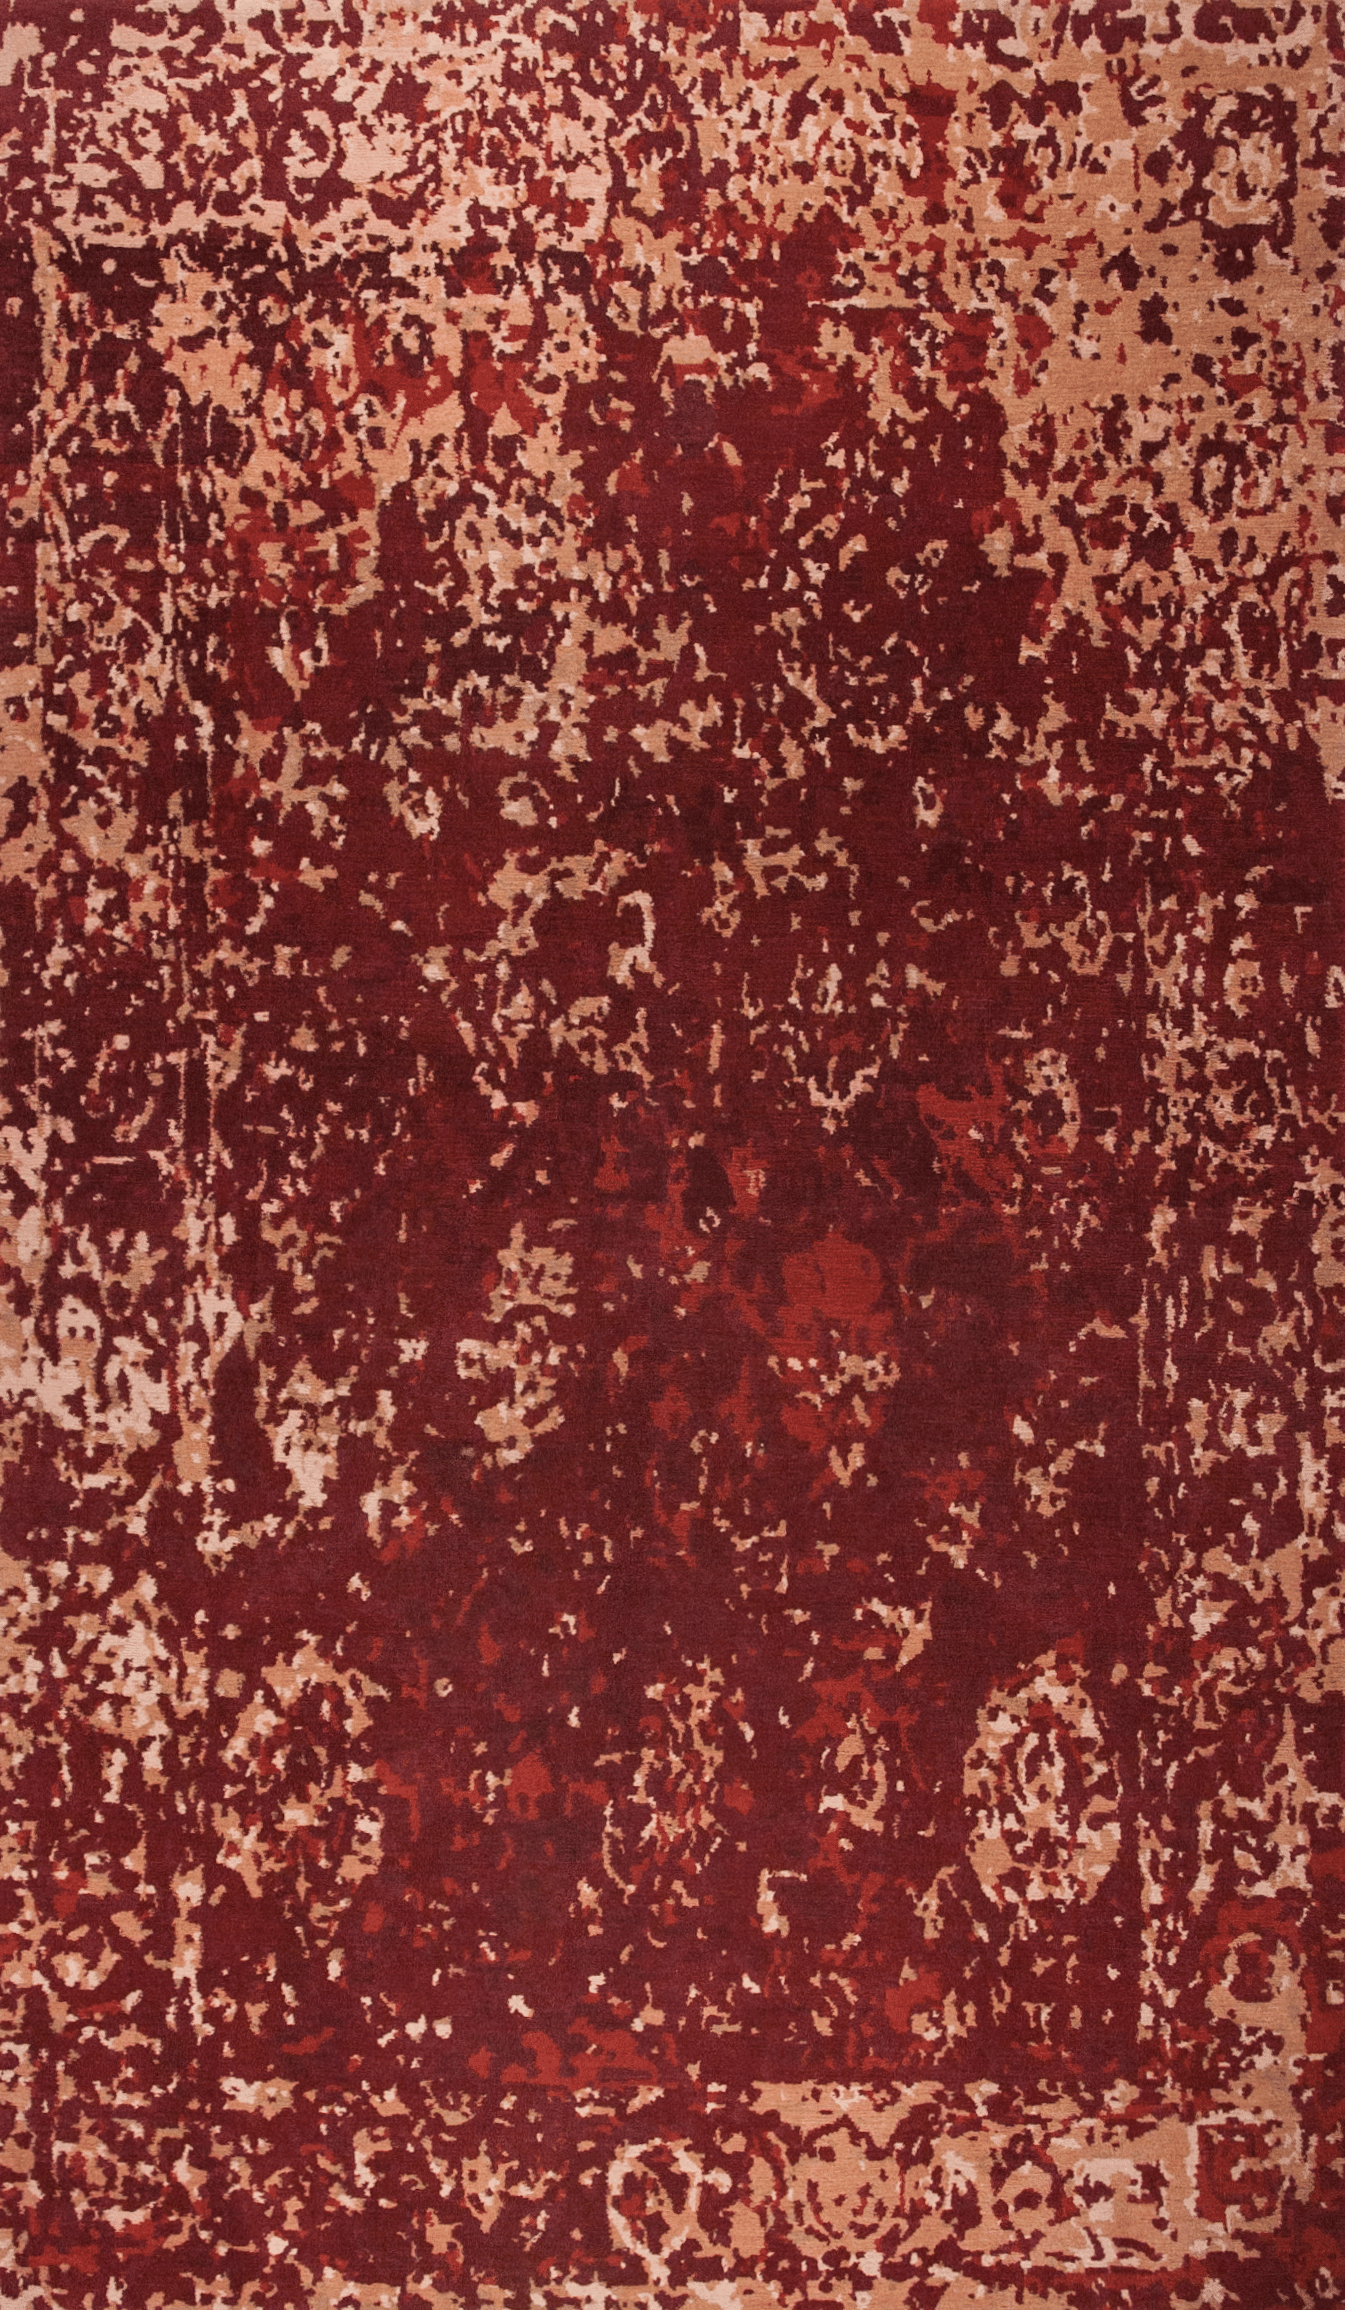 Geba Teppich "Antique red" in abstrahierter Darstellung eines klassischen Teppichs, verschiedene rot und beige Töne, aus Nepal, 100 Knoten, gefertigt aus tibetischer Hochlandschafwolle - Produktbild - Geba Teppich